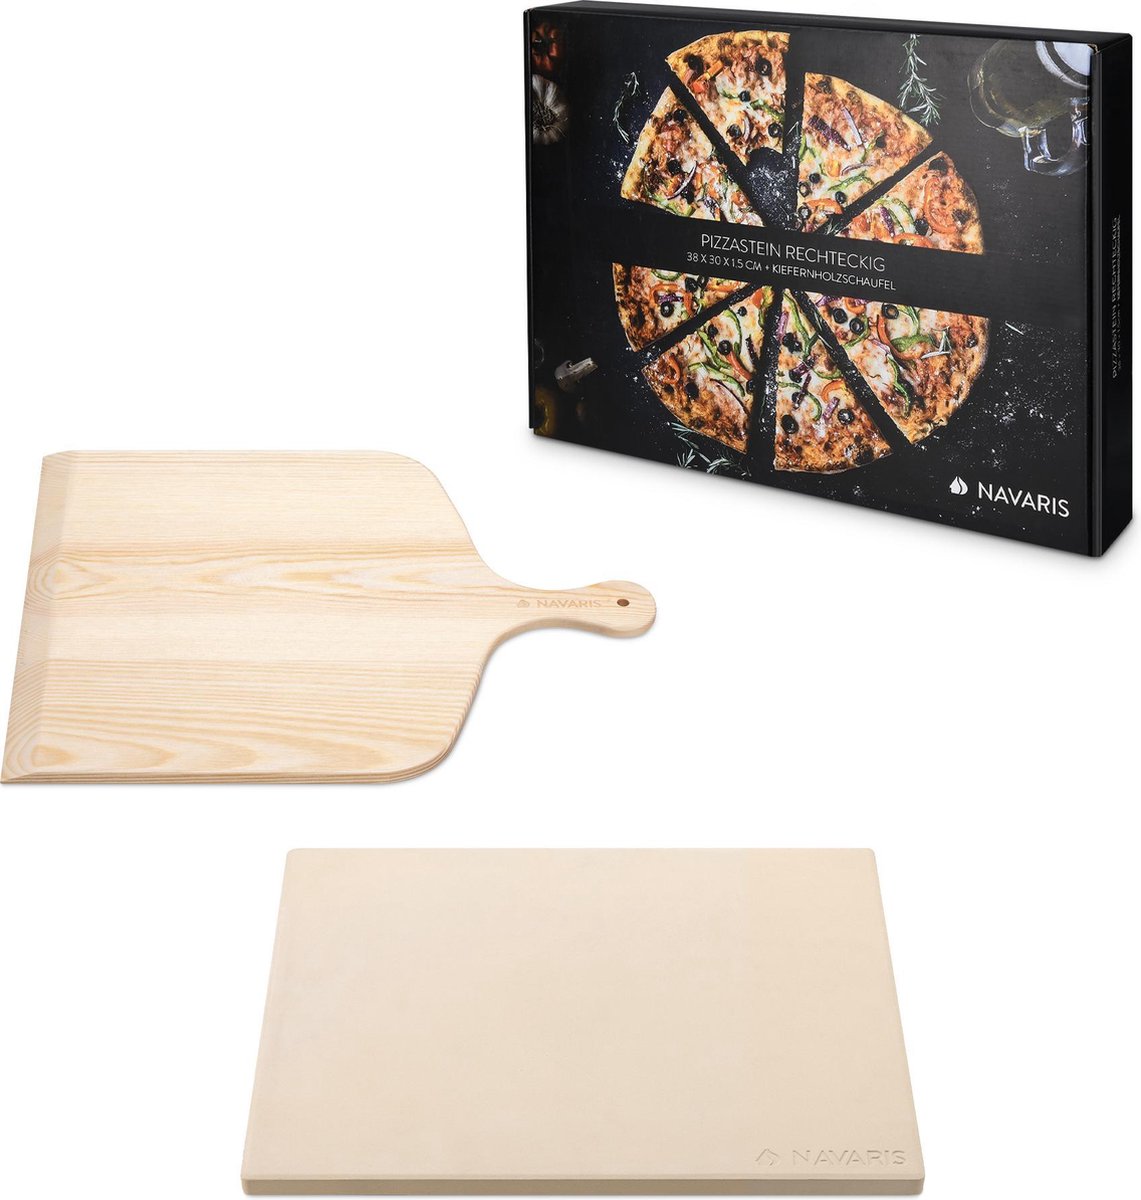 Navaris pizzasteen XL voor oven, grill en barbecue - Rechthoekige pizzaplaat 38 x 30 cm - Set inclusief pizzaschep en receptenboek